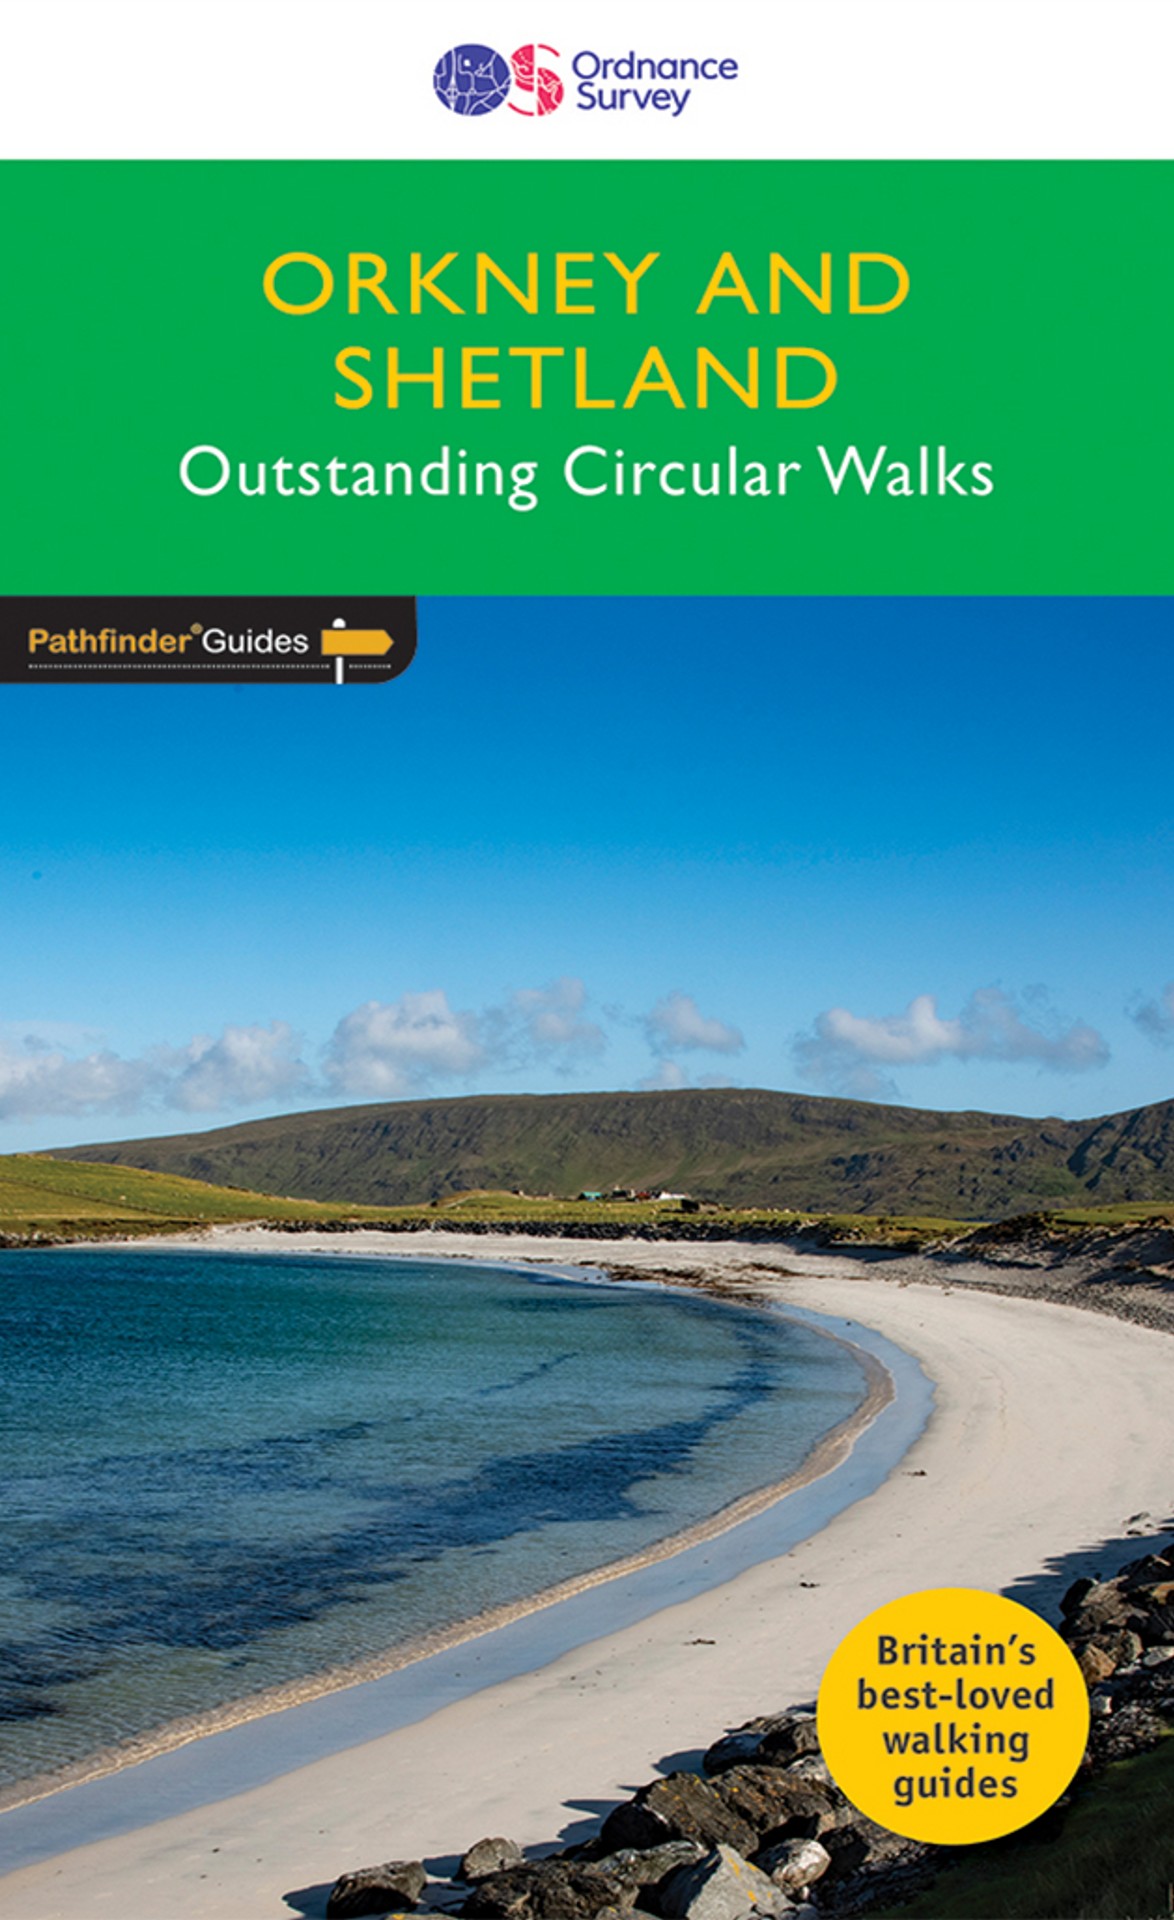 Online bestellen: Wandelgids 82 Pathfinder Guides Orkney and Shetland | Ordnance Survey